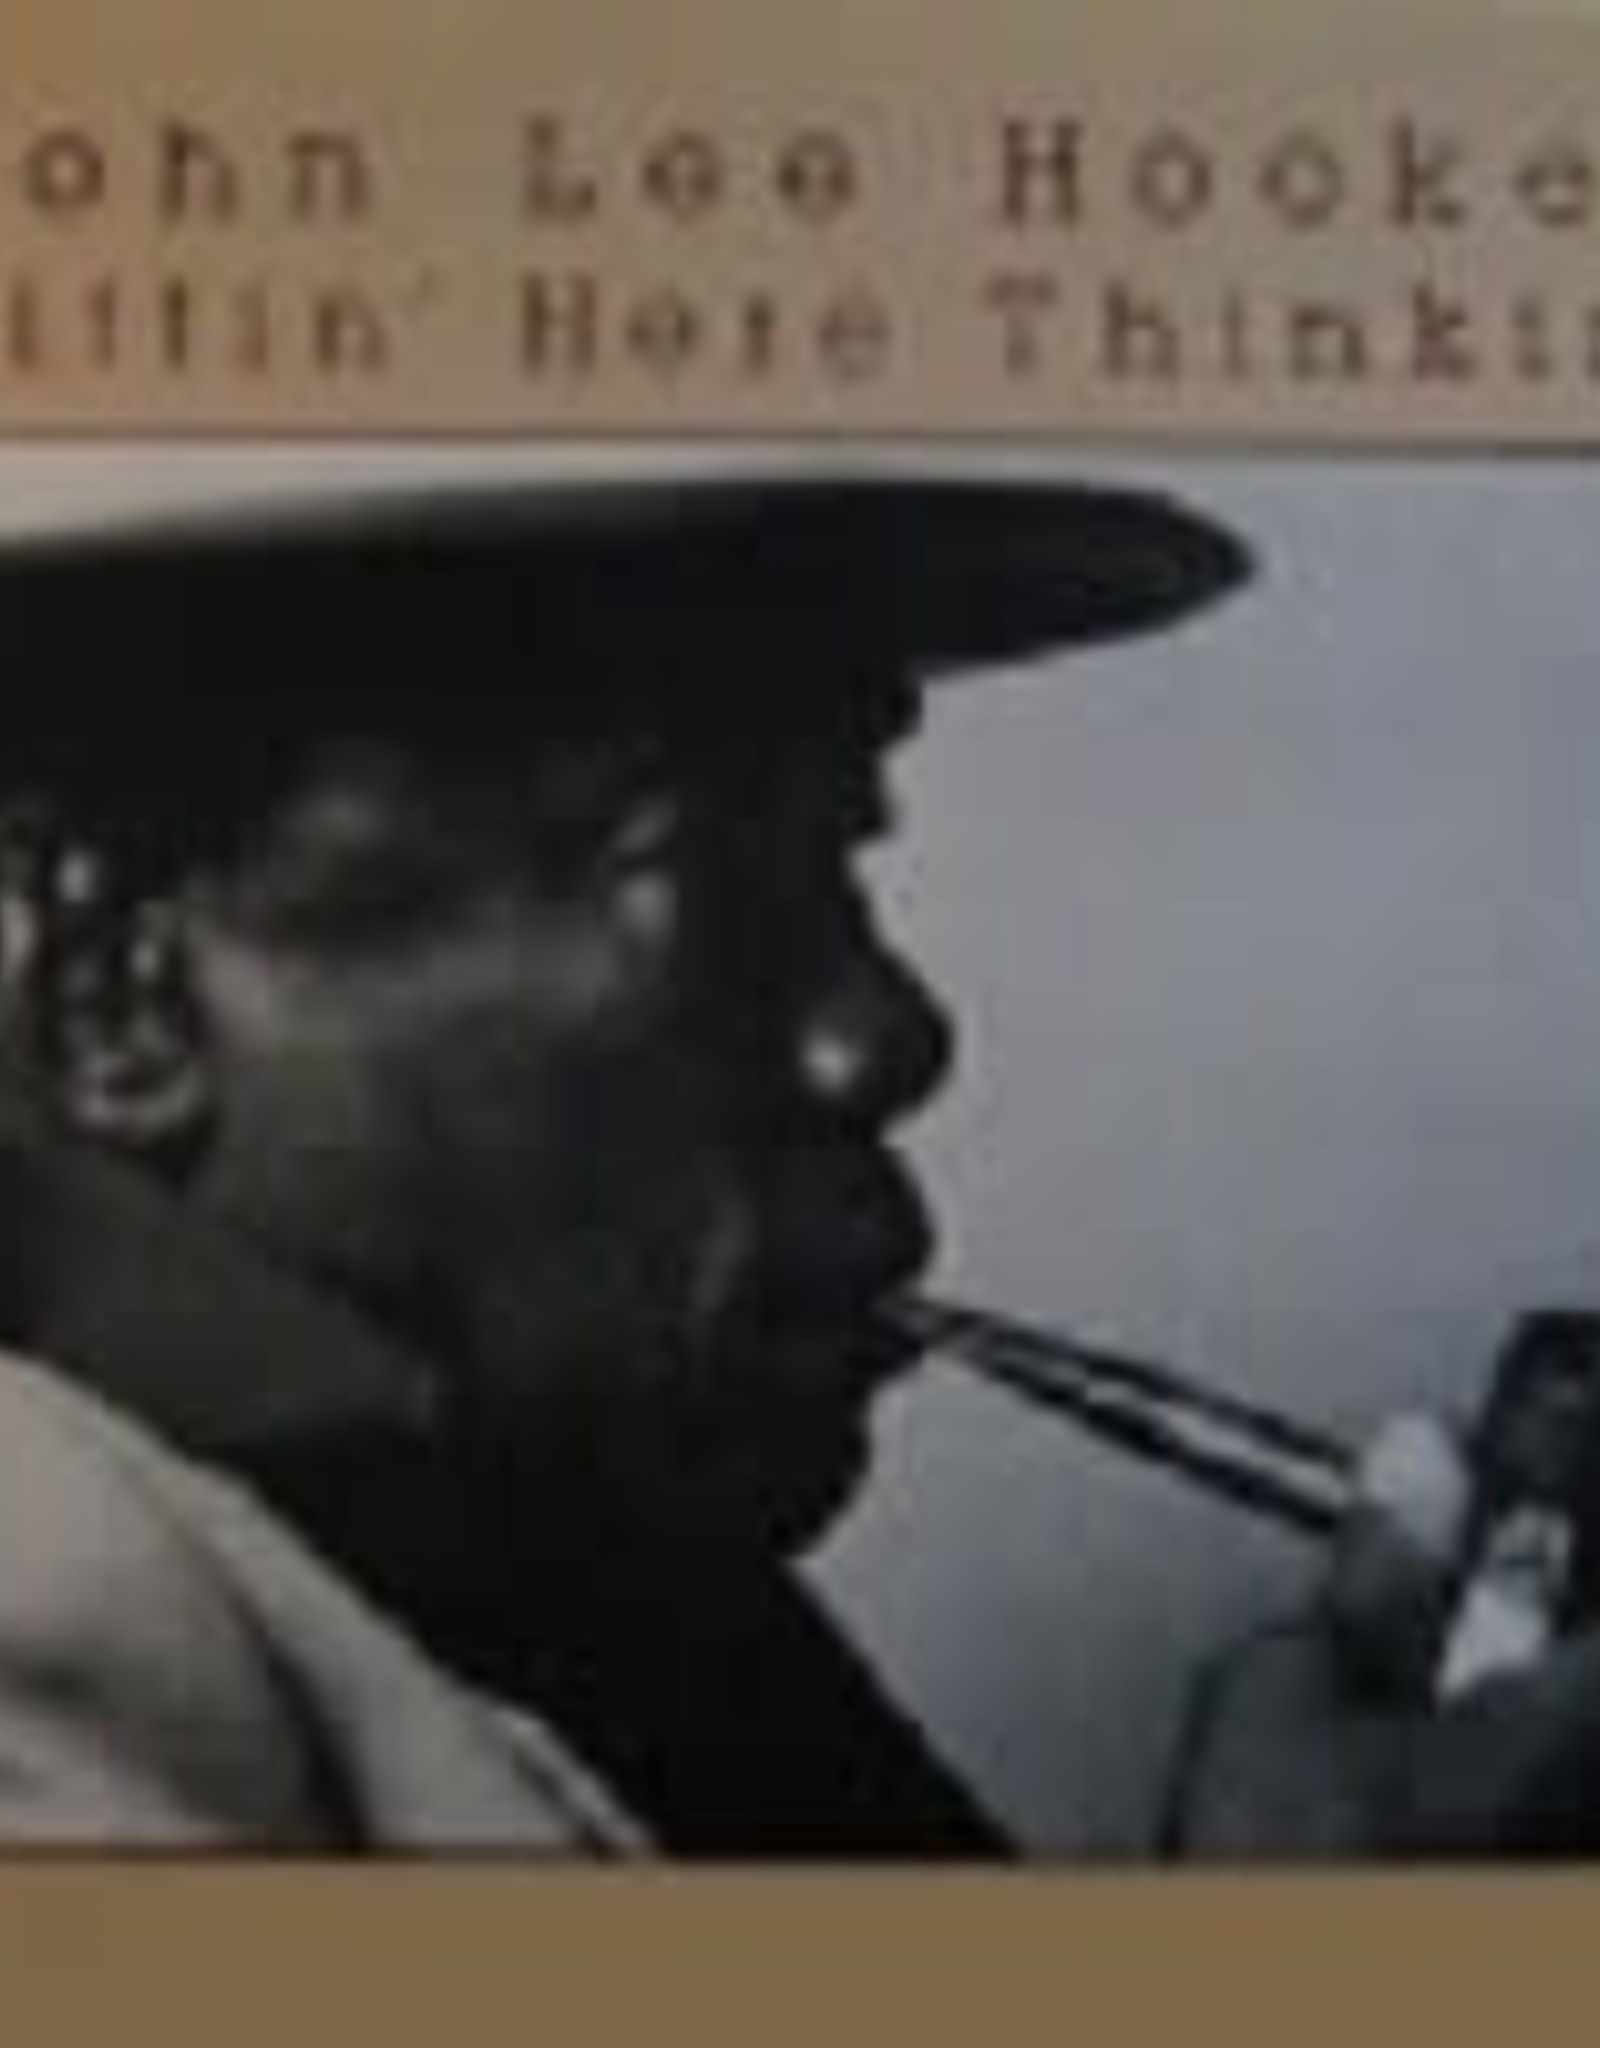 John Lee Hooker - Sittin' Here Thinkin'